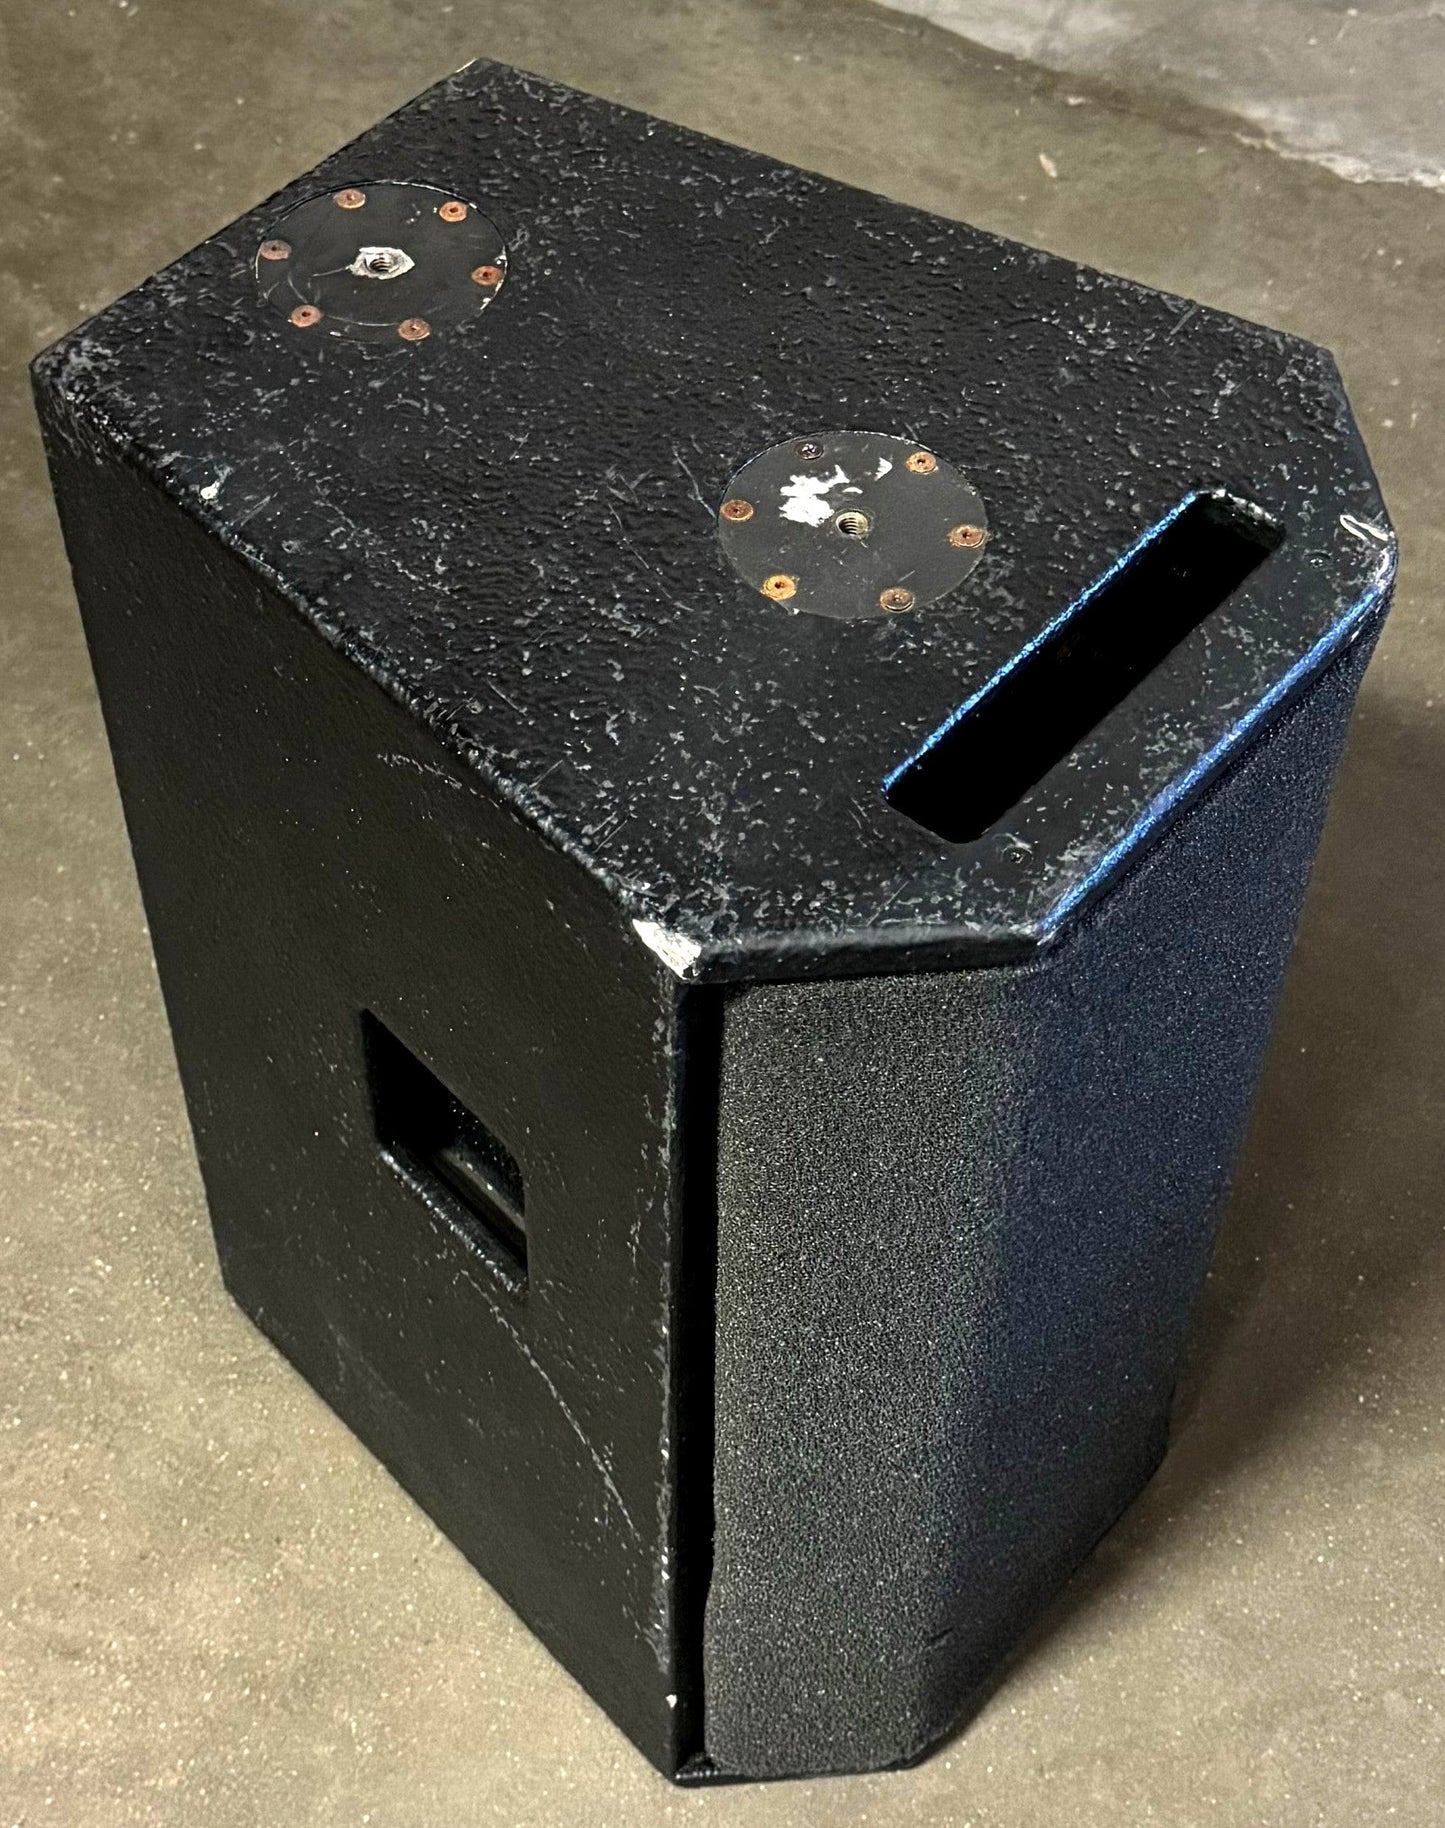 Apogee AE-5 Arrayable Loudspeaker System